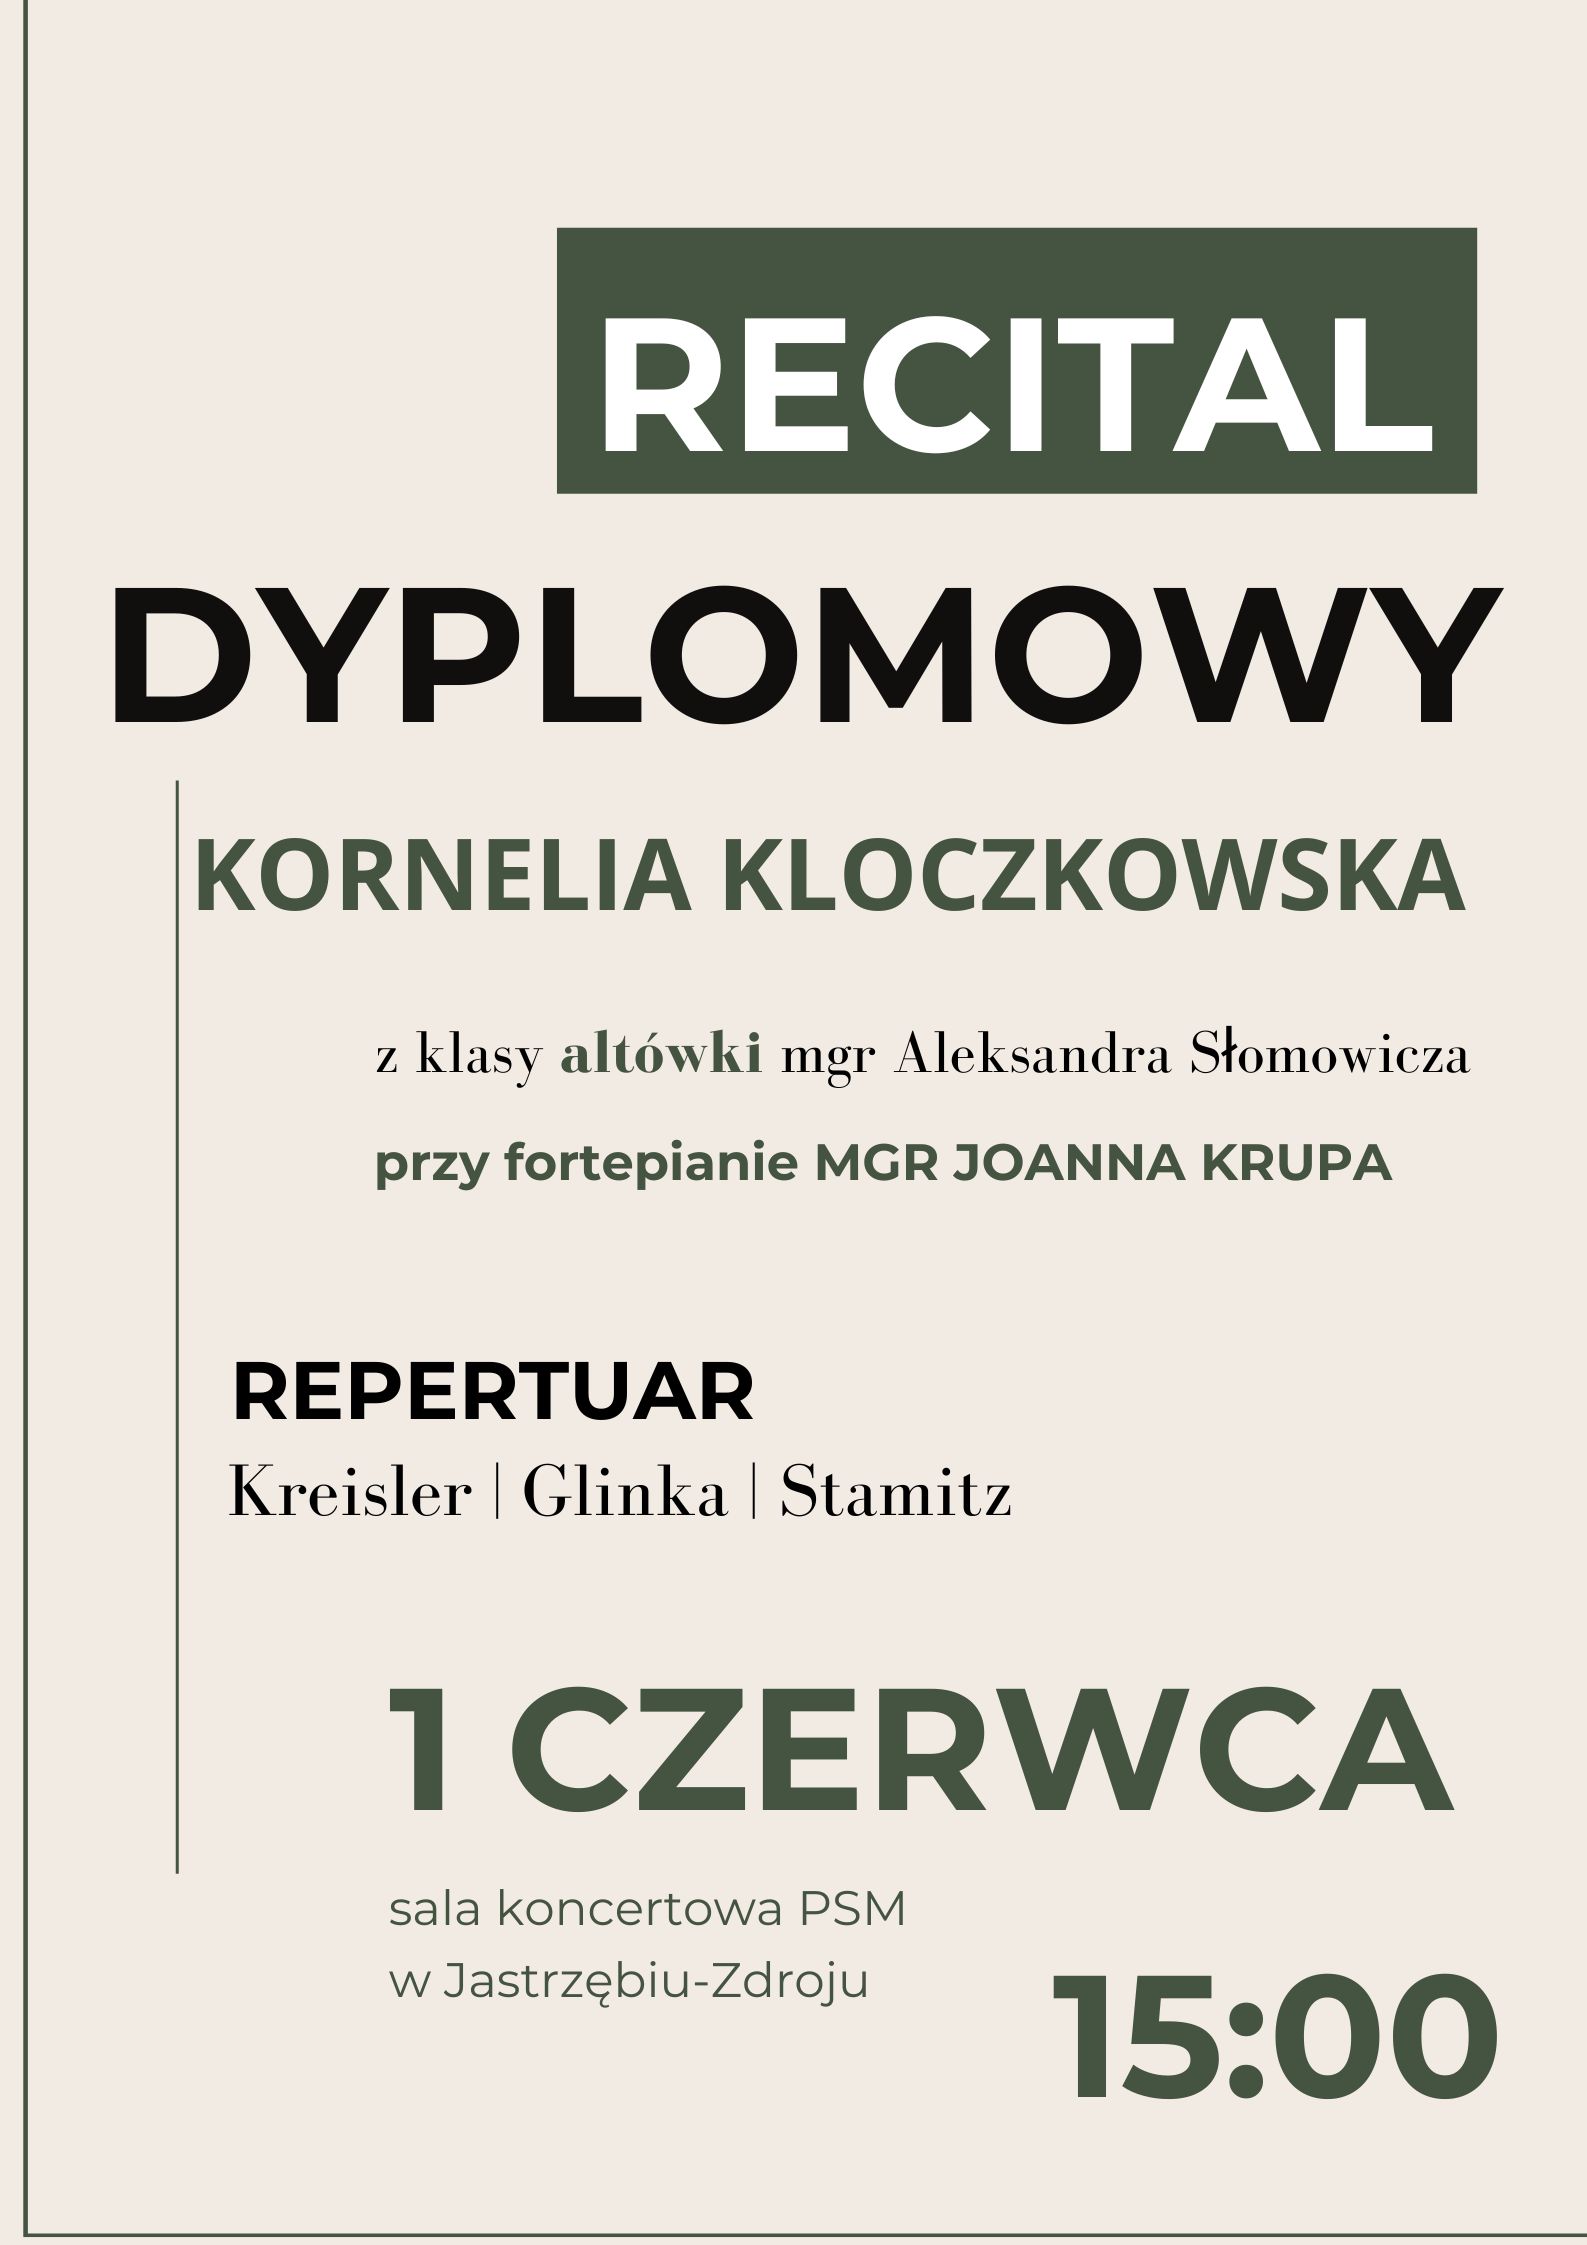 Plakat na Recital dyplomowy Kornelii Kloczkowskiej.